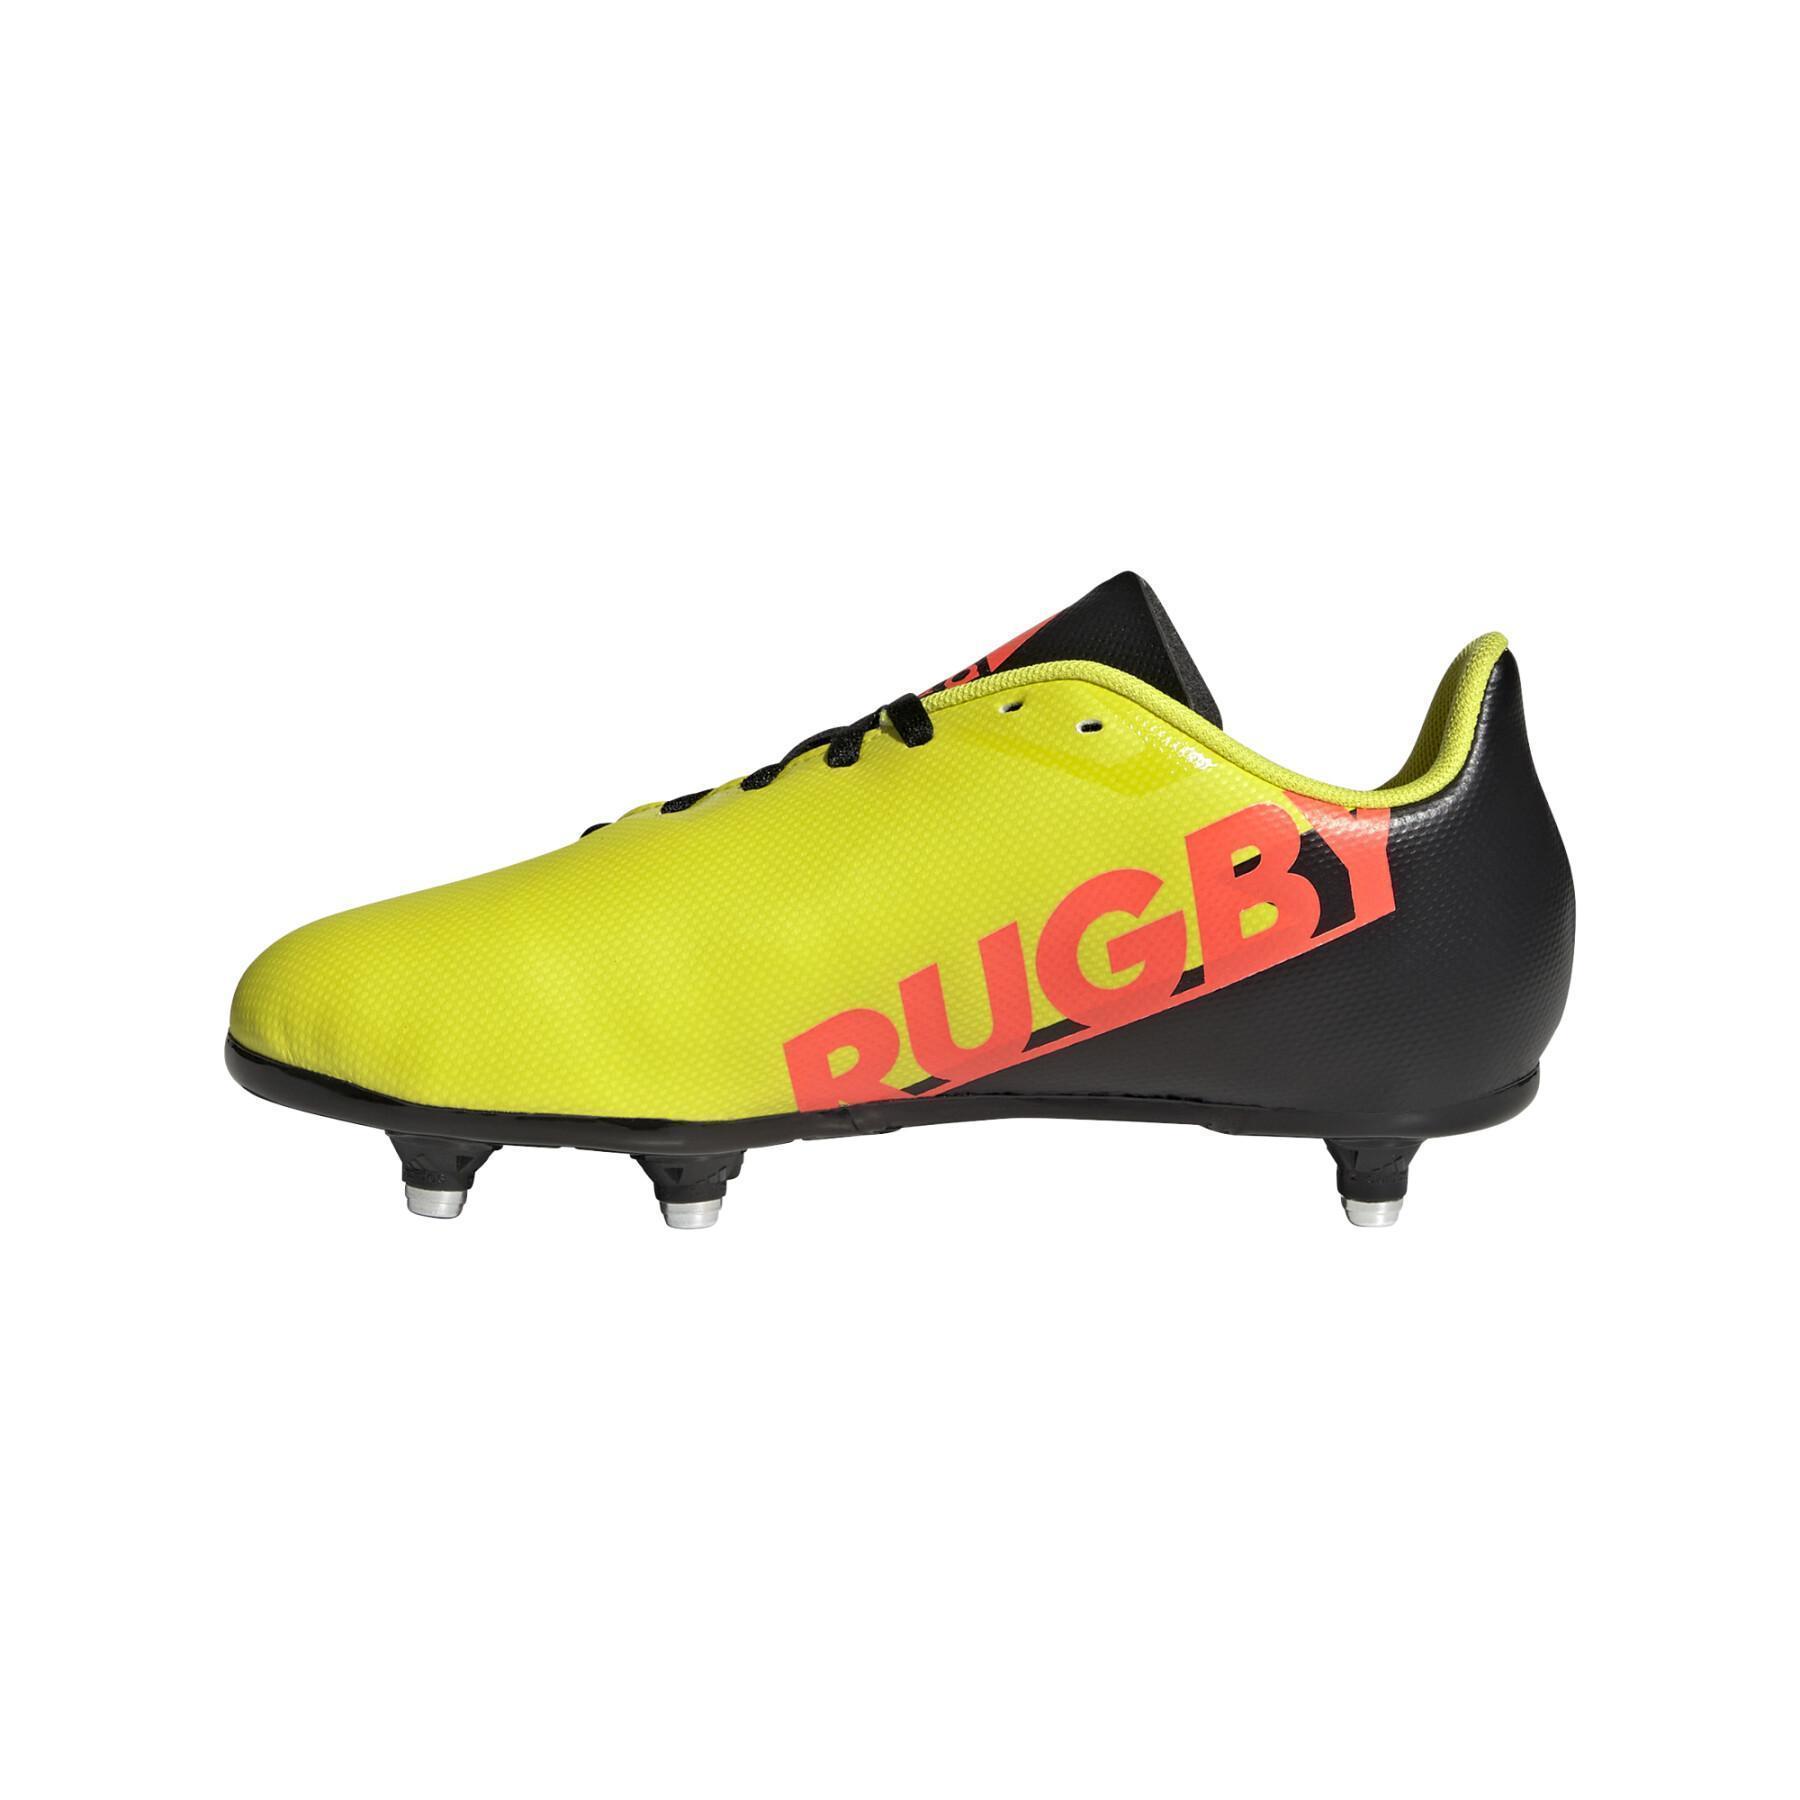 Buty dziecięce adidas Rugby Sg